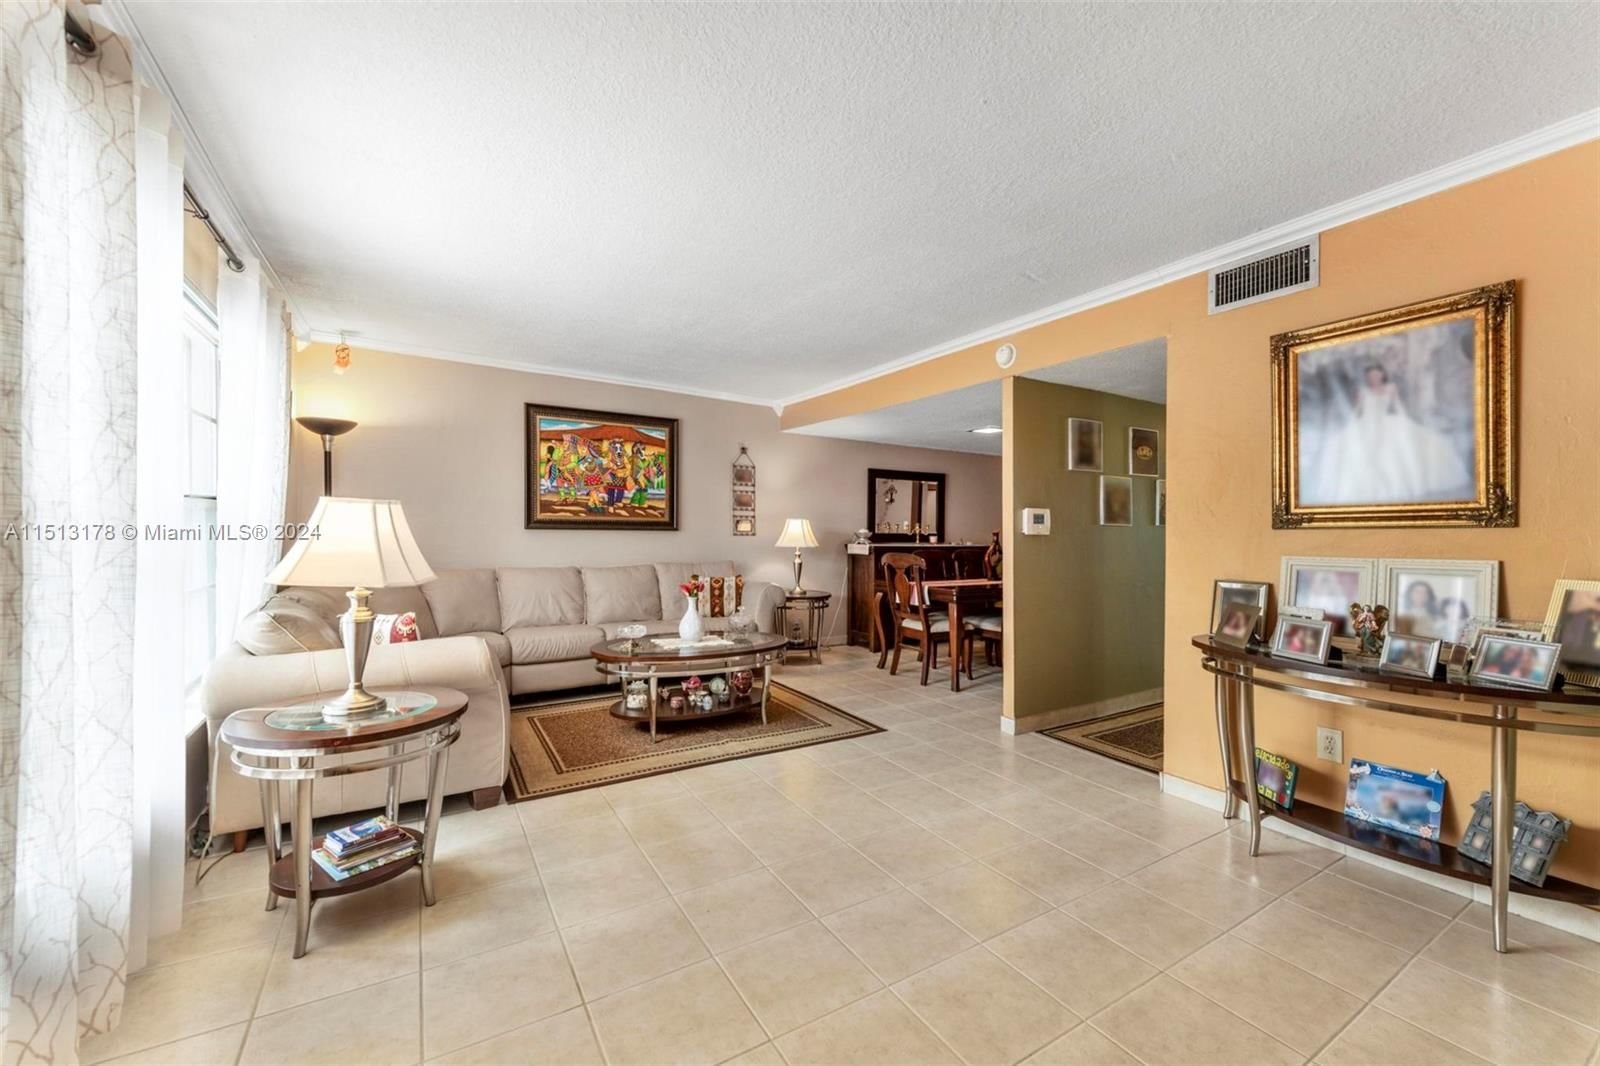 Real estate property located at 14103 66th St B4, Miami-Dade County, LAKE VILLAGE CONDO, Miami, FL